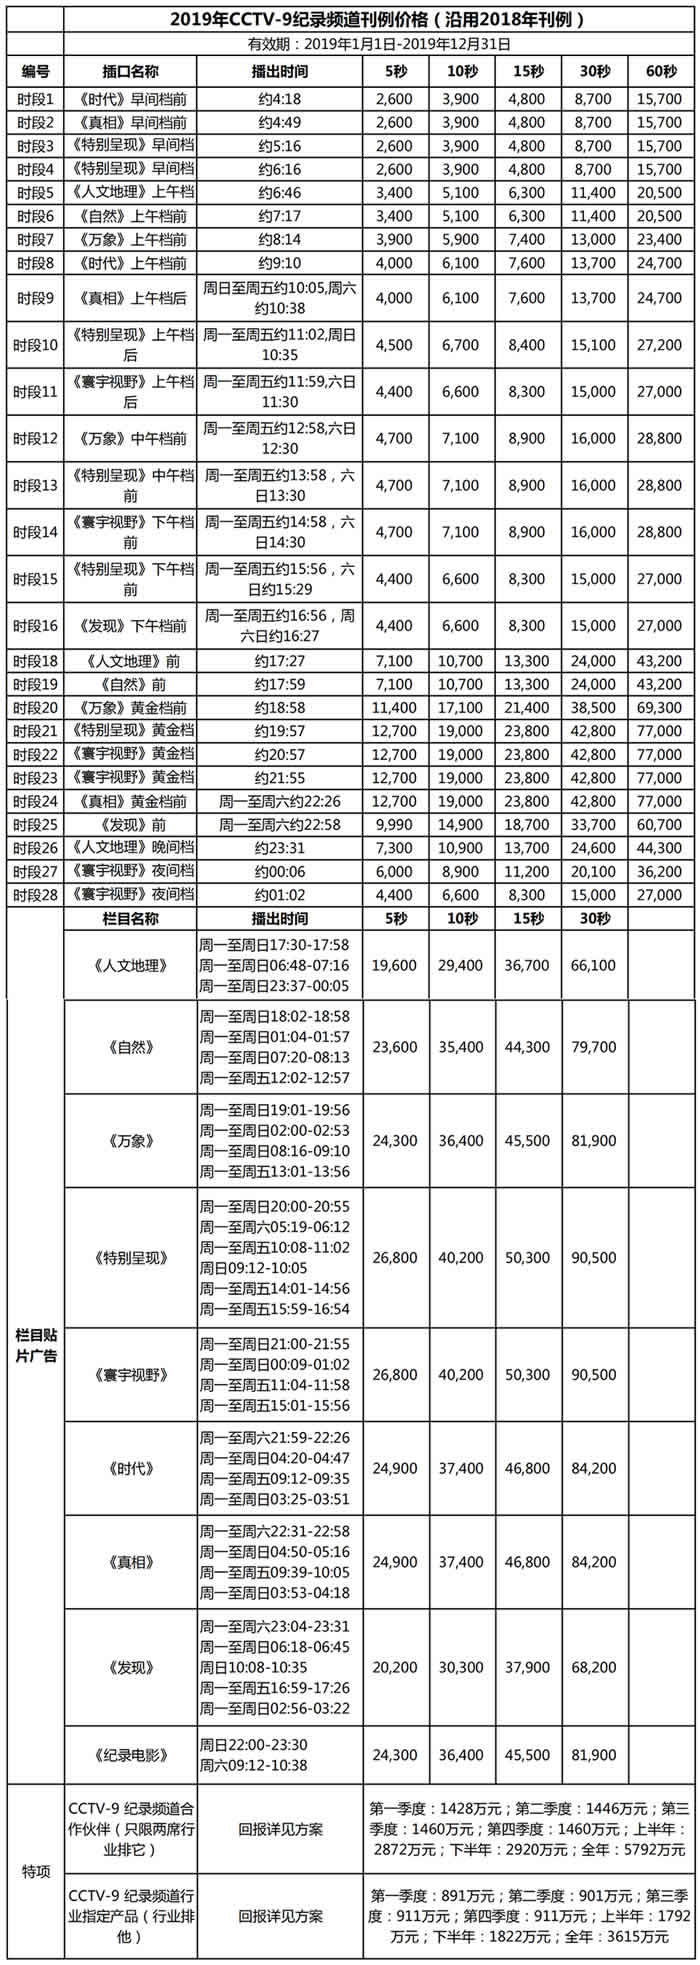 中央电视台纪录片频道(CCTV-9)2019年栏目及时段广告价格